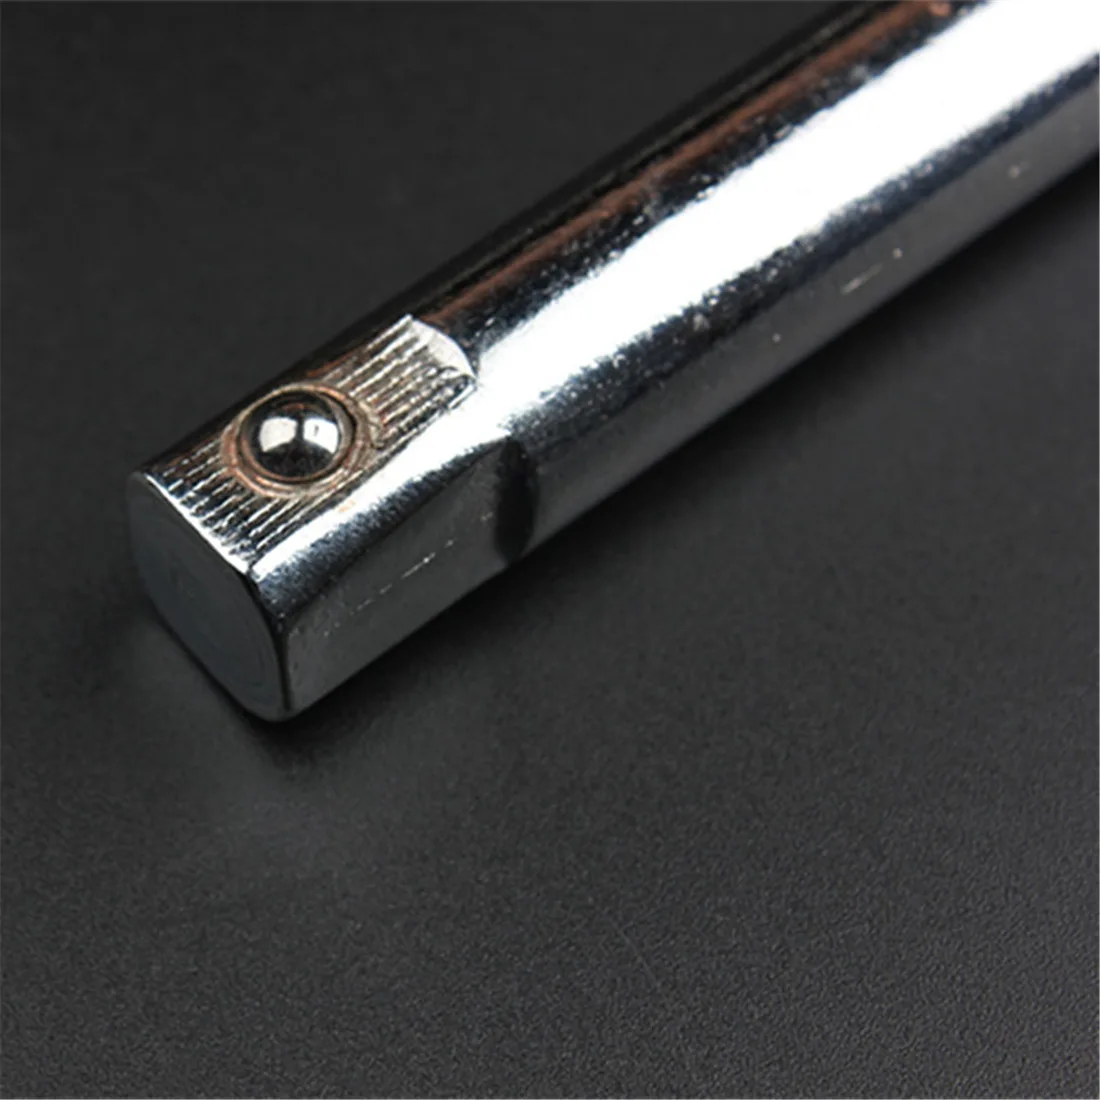 1/2 длинный гибочный гаечный ключ l-образный набор гаечный ключей для ремонта ручных инструментов